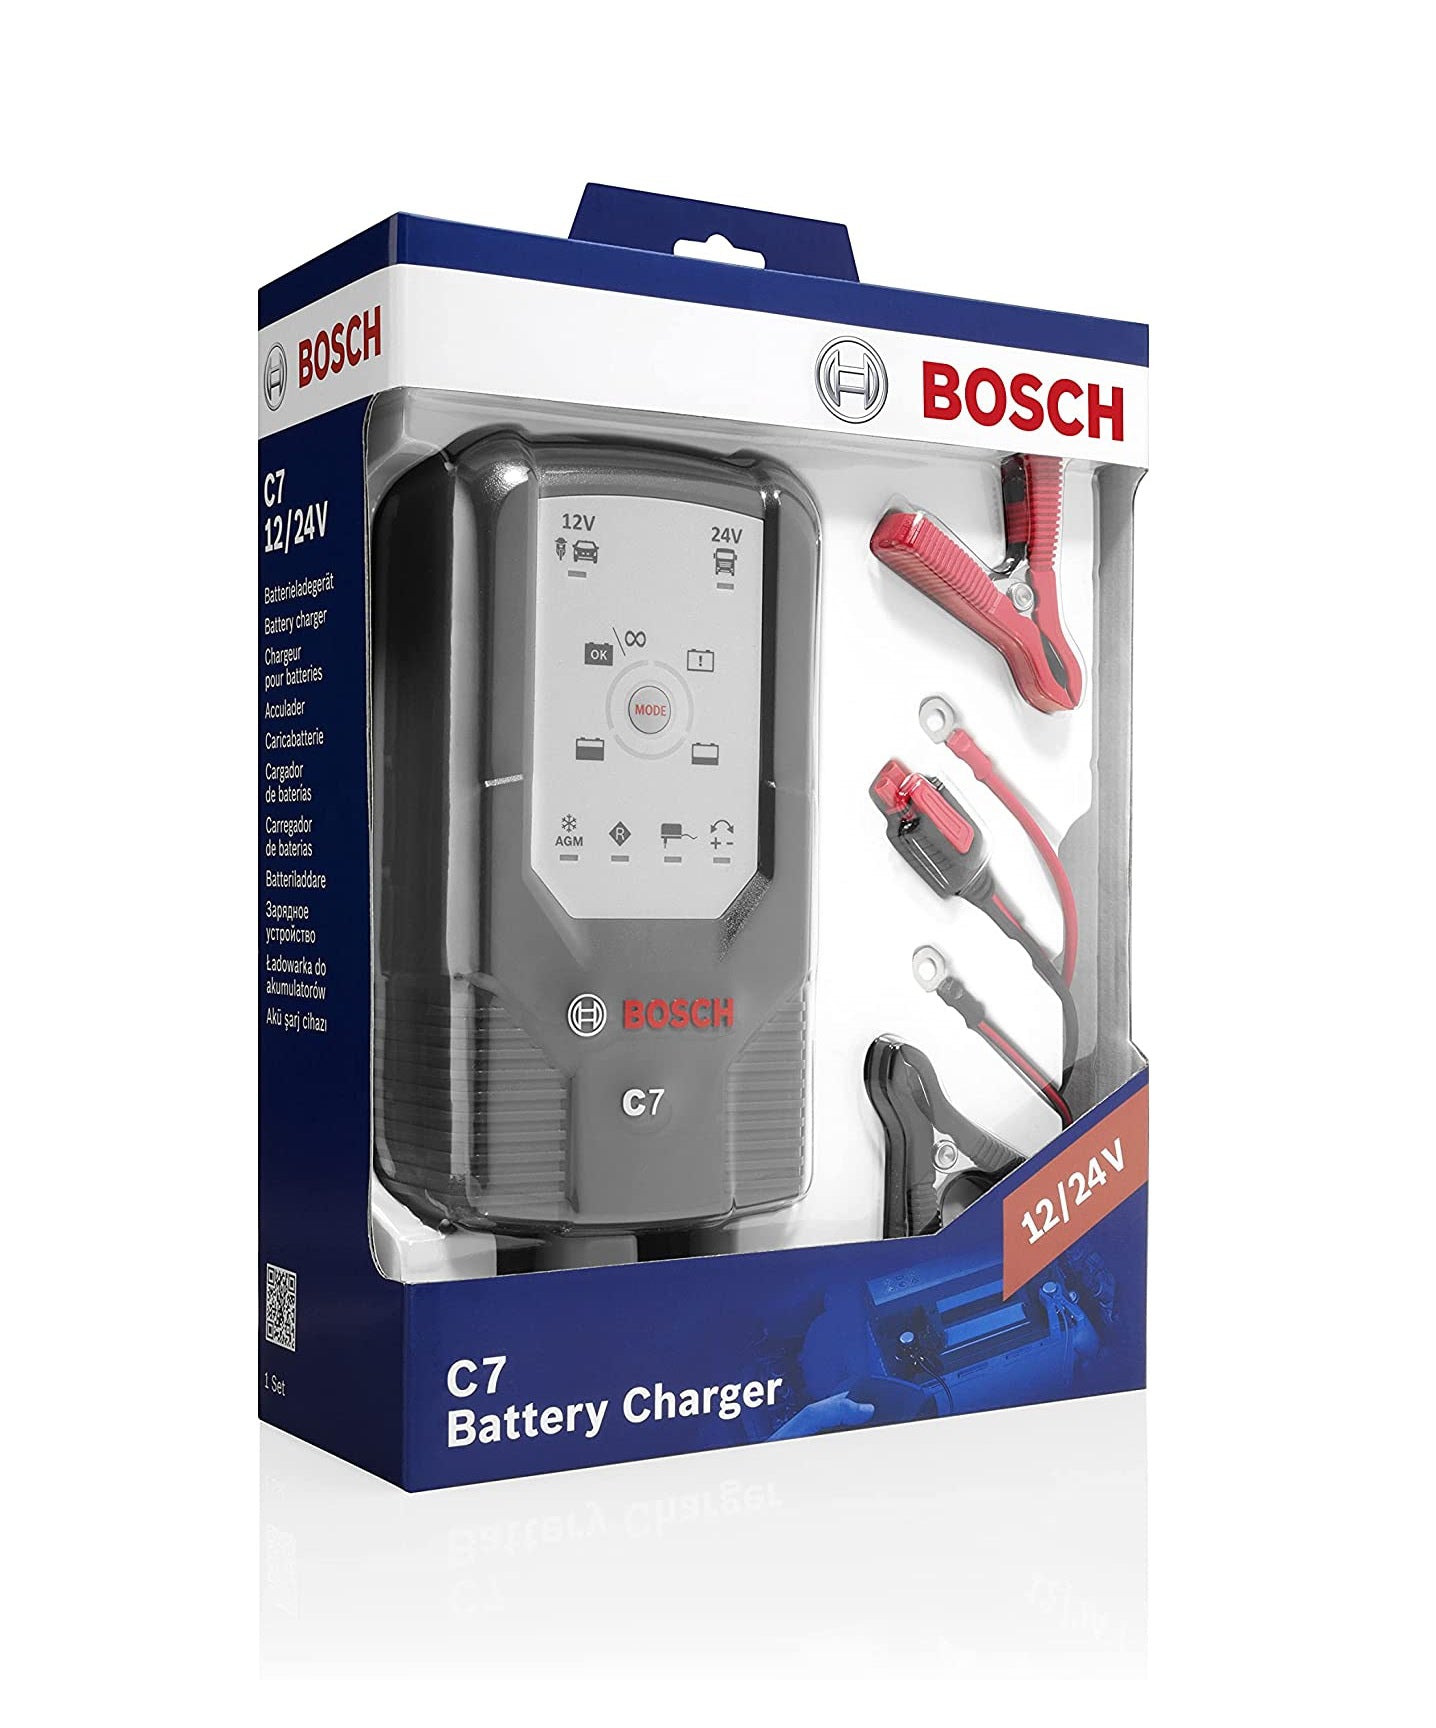 BOSCH C7 Battery Charger Bedienungsanleitung